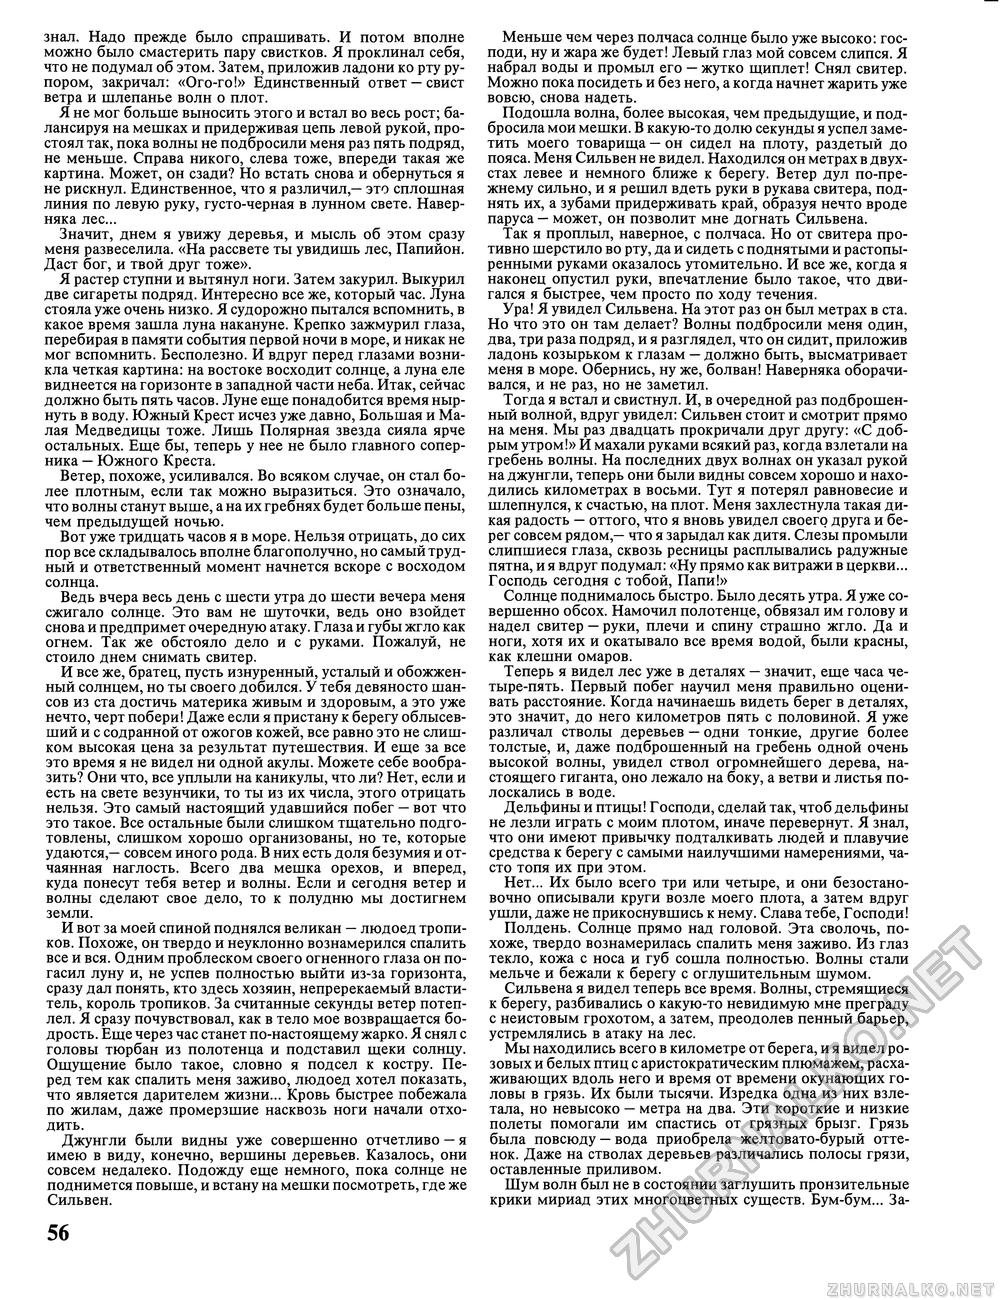 Вокруг света 1992-11, страница 58